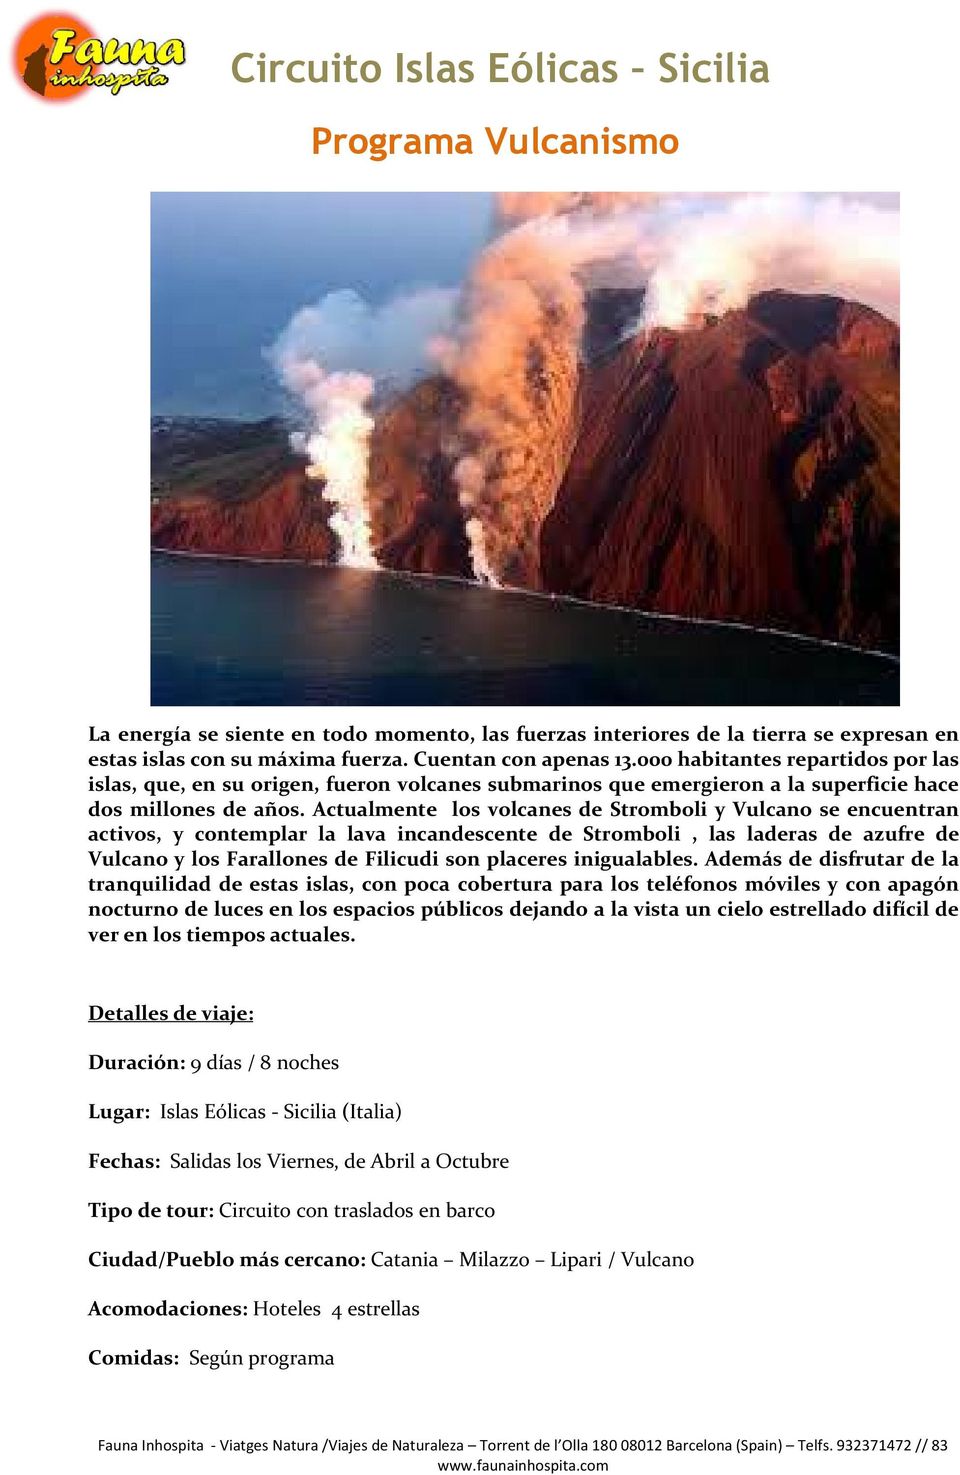 Actualmente los volcanes de Stromboli y Vulcano se encuentran activos, y contemplar la lava incandescente de Stromboli, las laderas de azufre de Vulcano y los Farallones de Filicudi son placeres